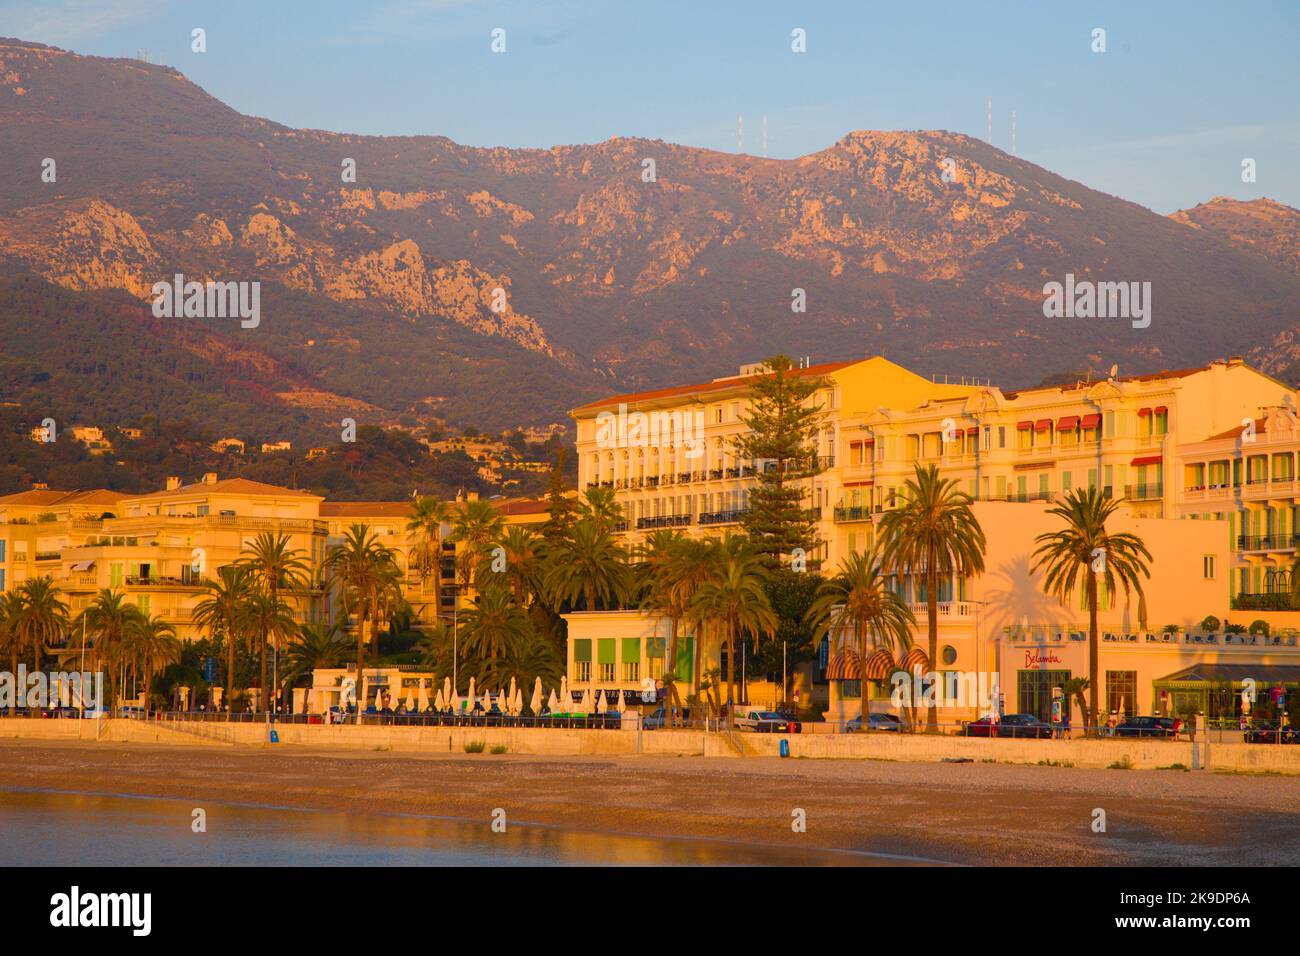 France, Cote d'Azur, Menton, Promenade du Soleil, Stock Photo